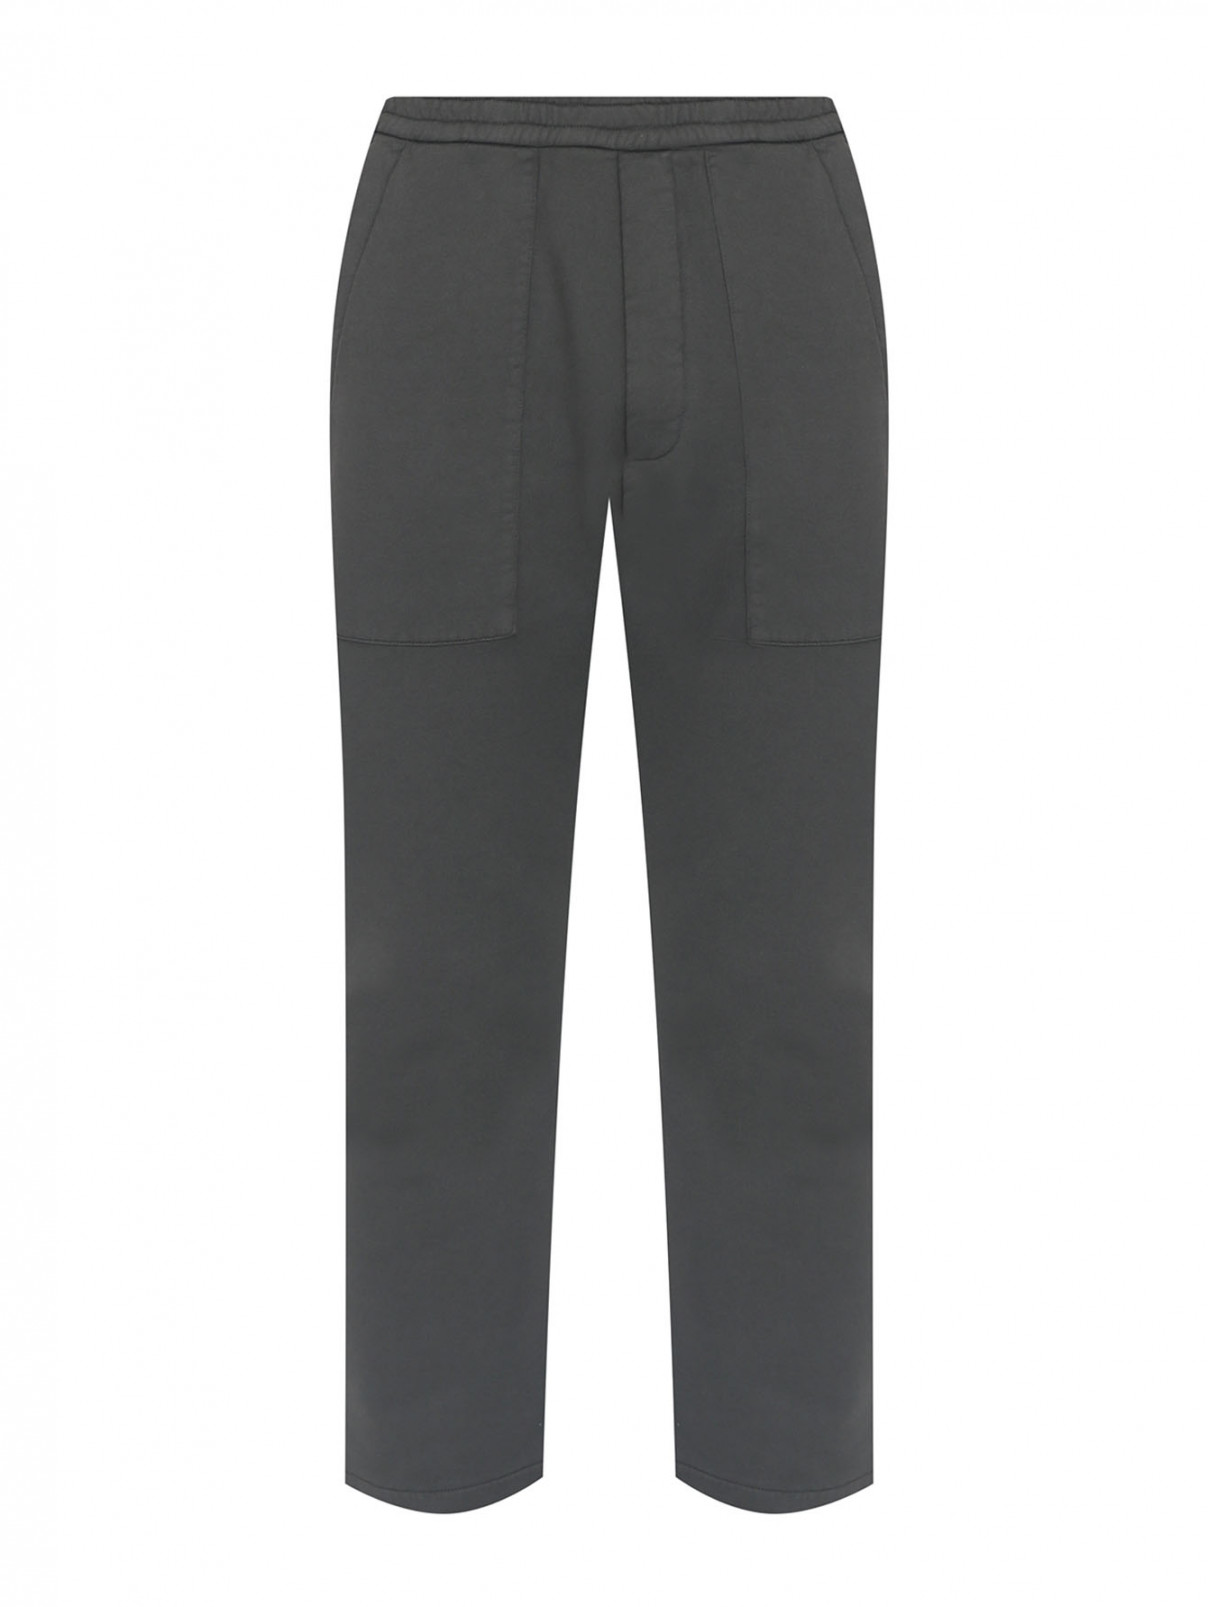 Однотонные брюки из хлопка на резинке Barena  –  Общий вид  – Цвет:  Серый